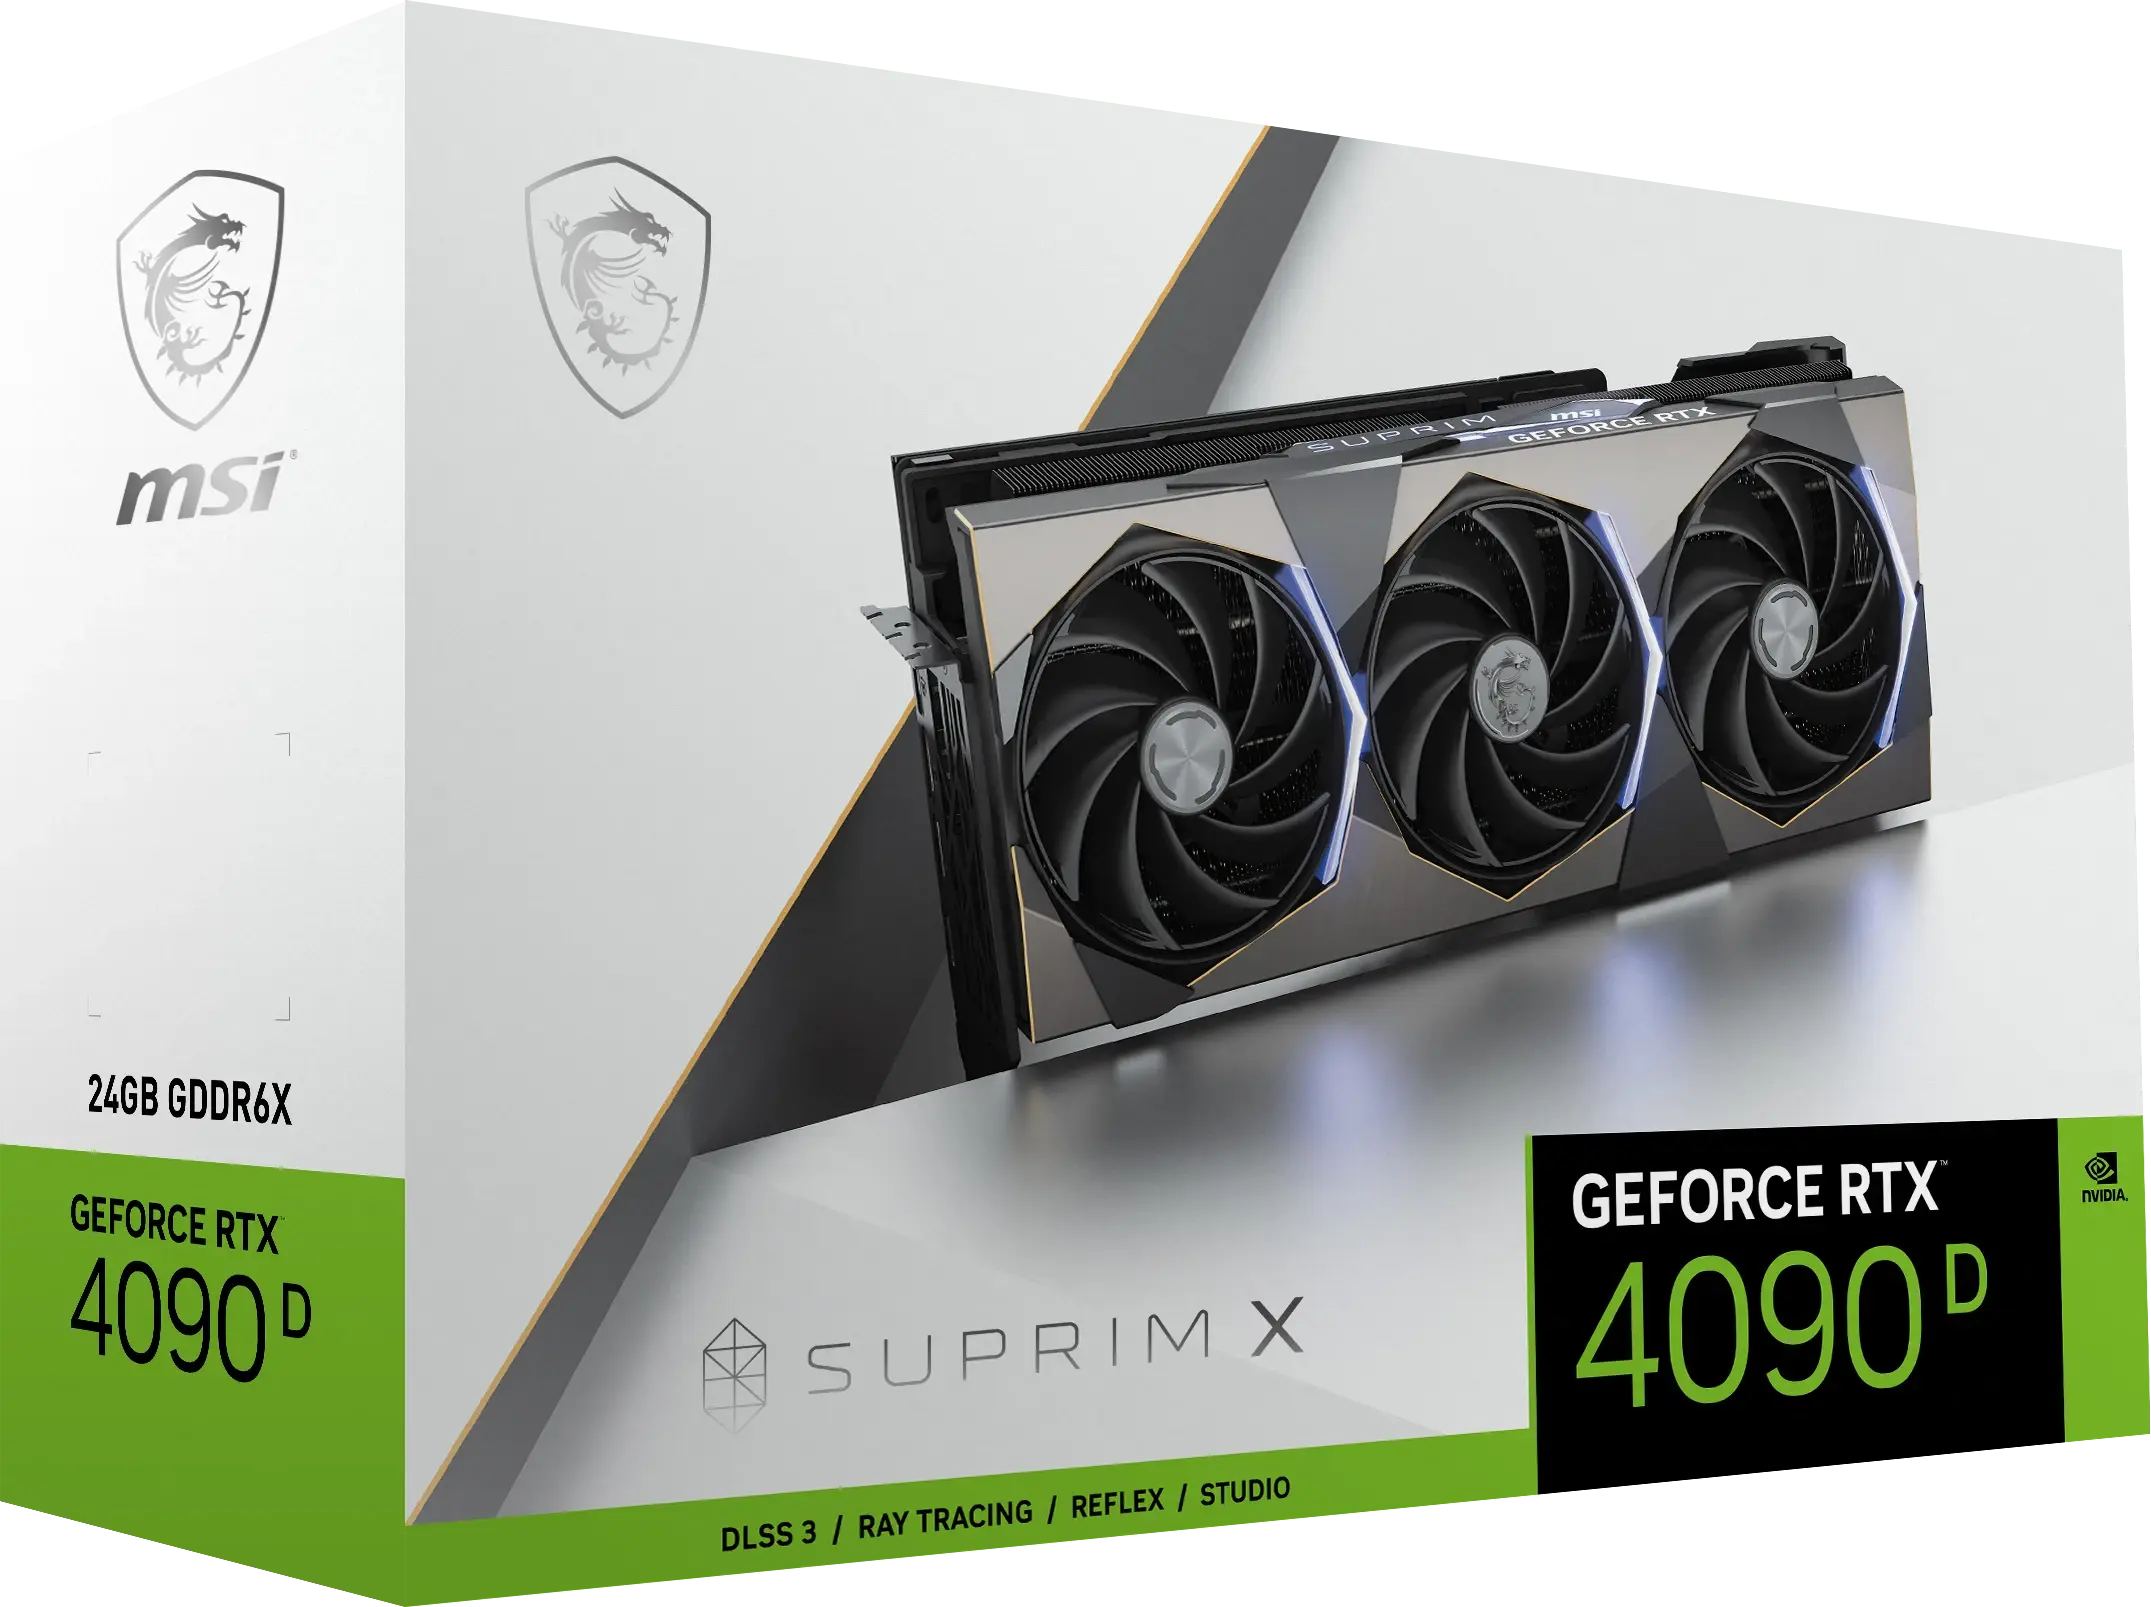 Компания Nvidia анонсировала видеокарту GeForce RTX 4090 D